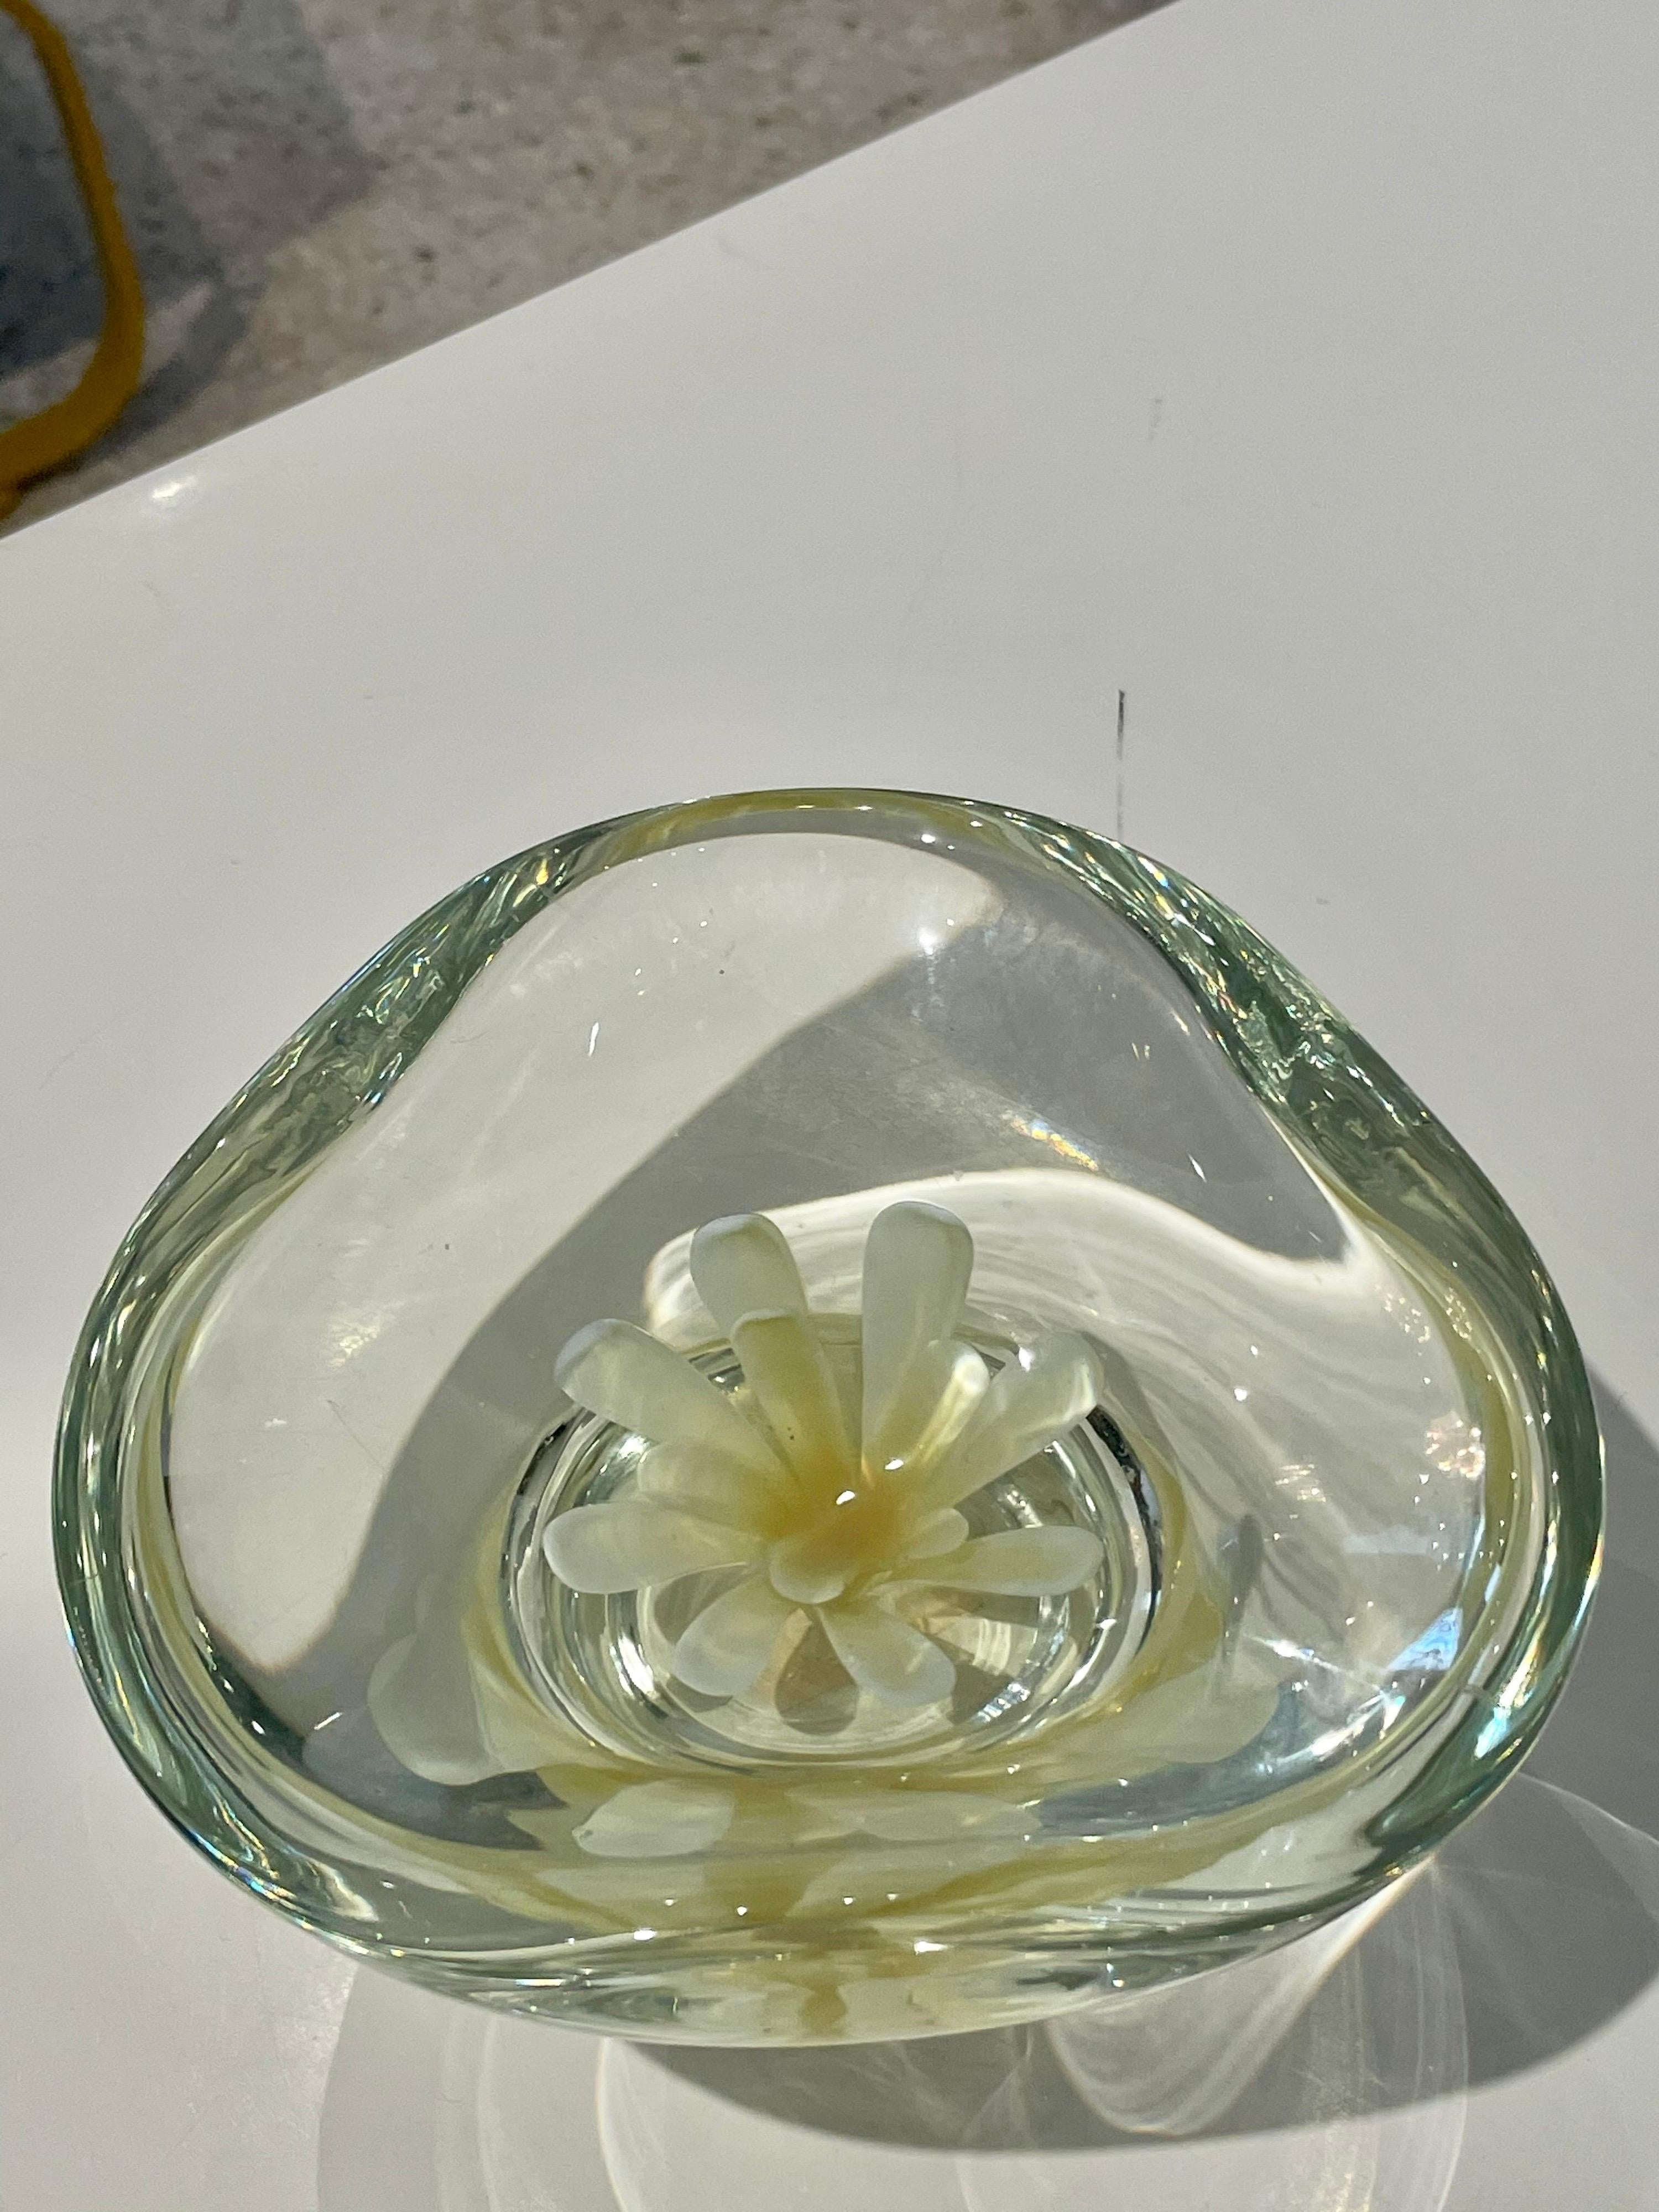 Dieser wunderbare kleine Schatz verfügt über eine schwimmende Blume in der Mitte dieser Schale, vide-poche. Dieses alte Muranoglas ist durchgehend in einem sanften Kanariengelb gehalten - sehr speziell und sommerlich.